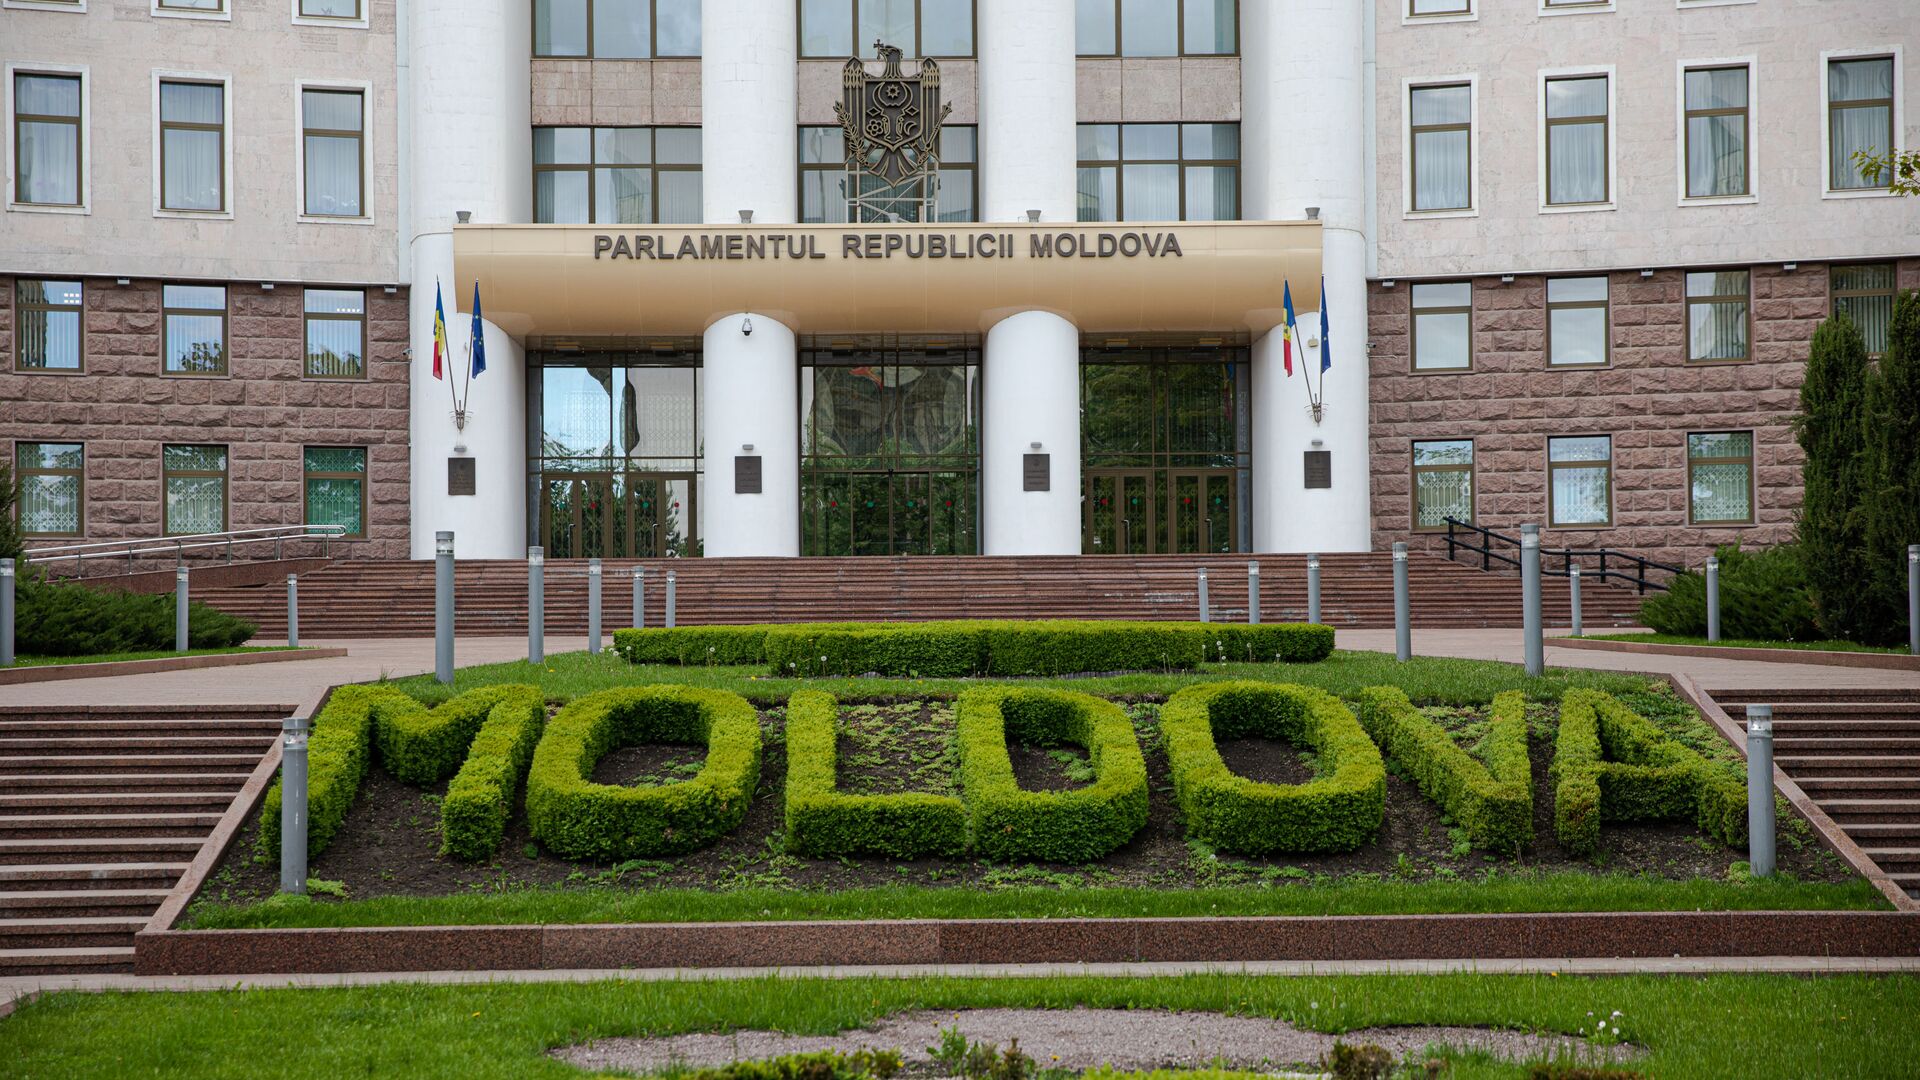 Parlamentul Republicii Moldova - Sputnik Moldova, 1920, 18.10.2021